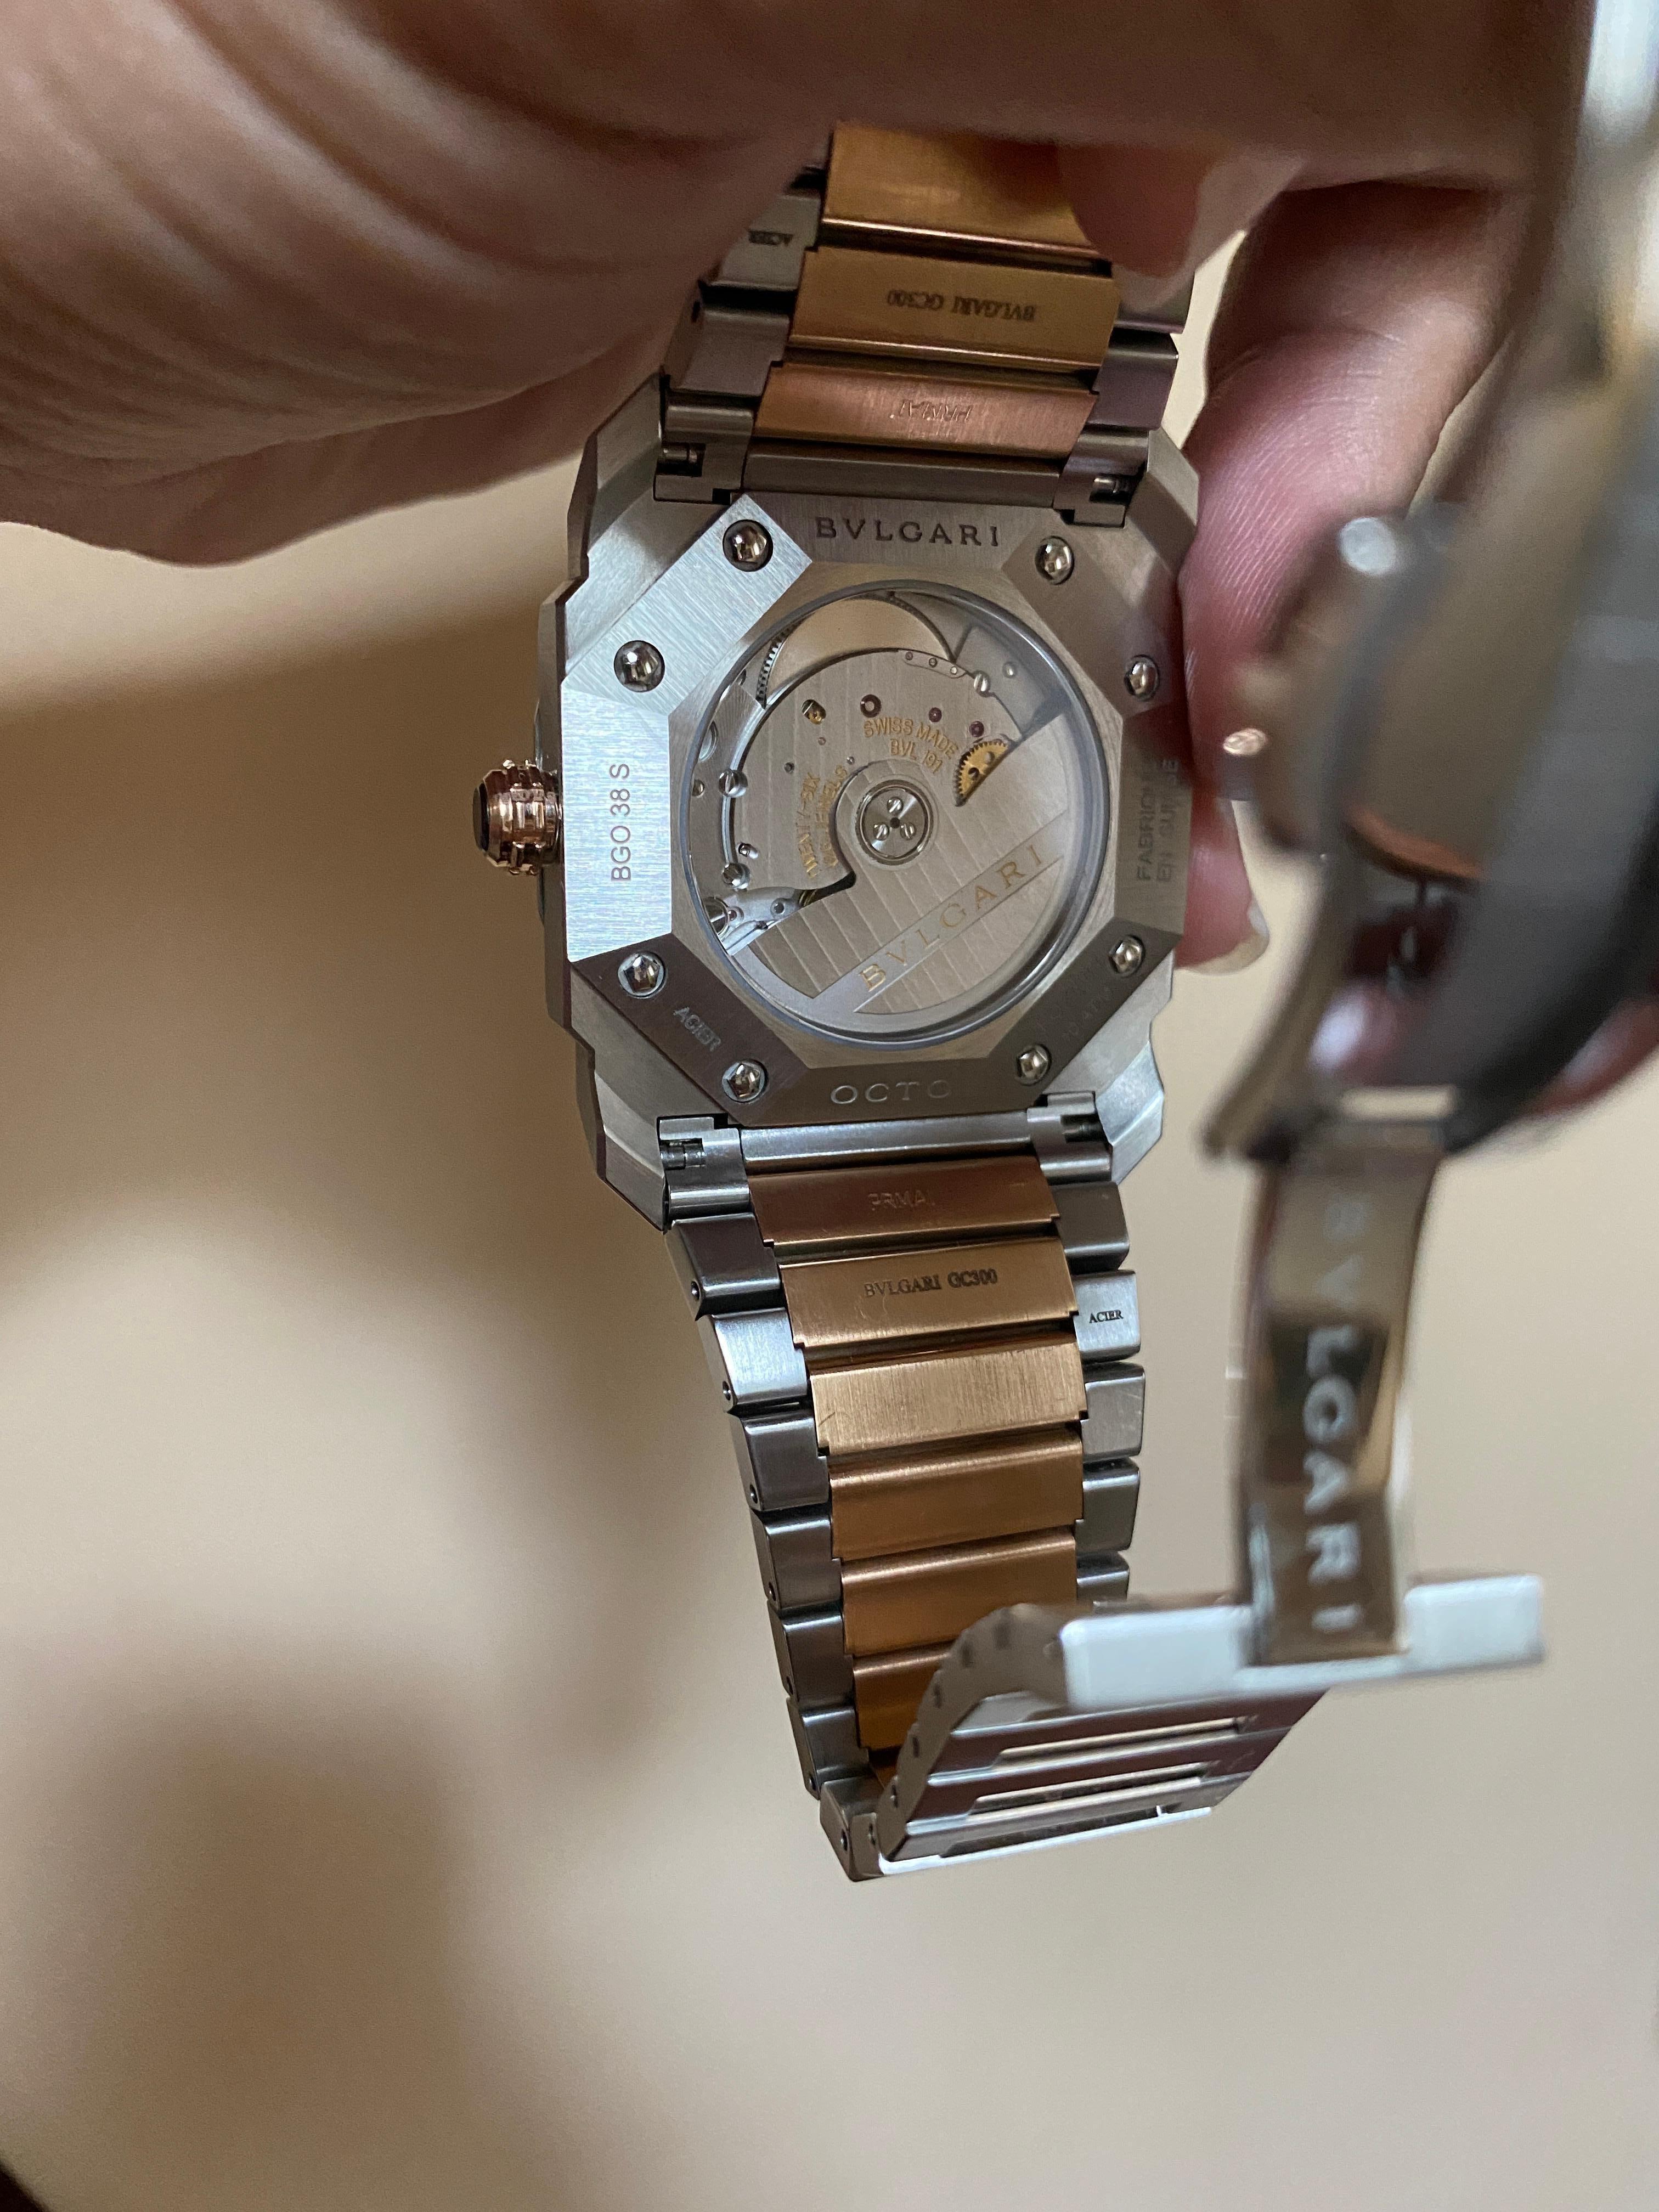 bvlgari mechanical watch